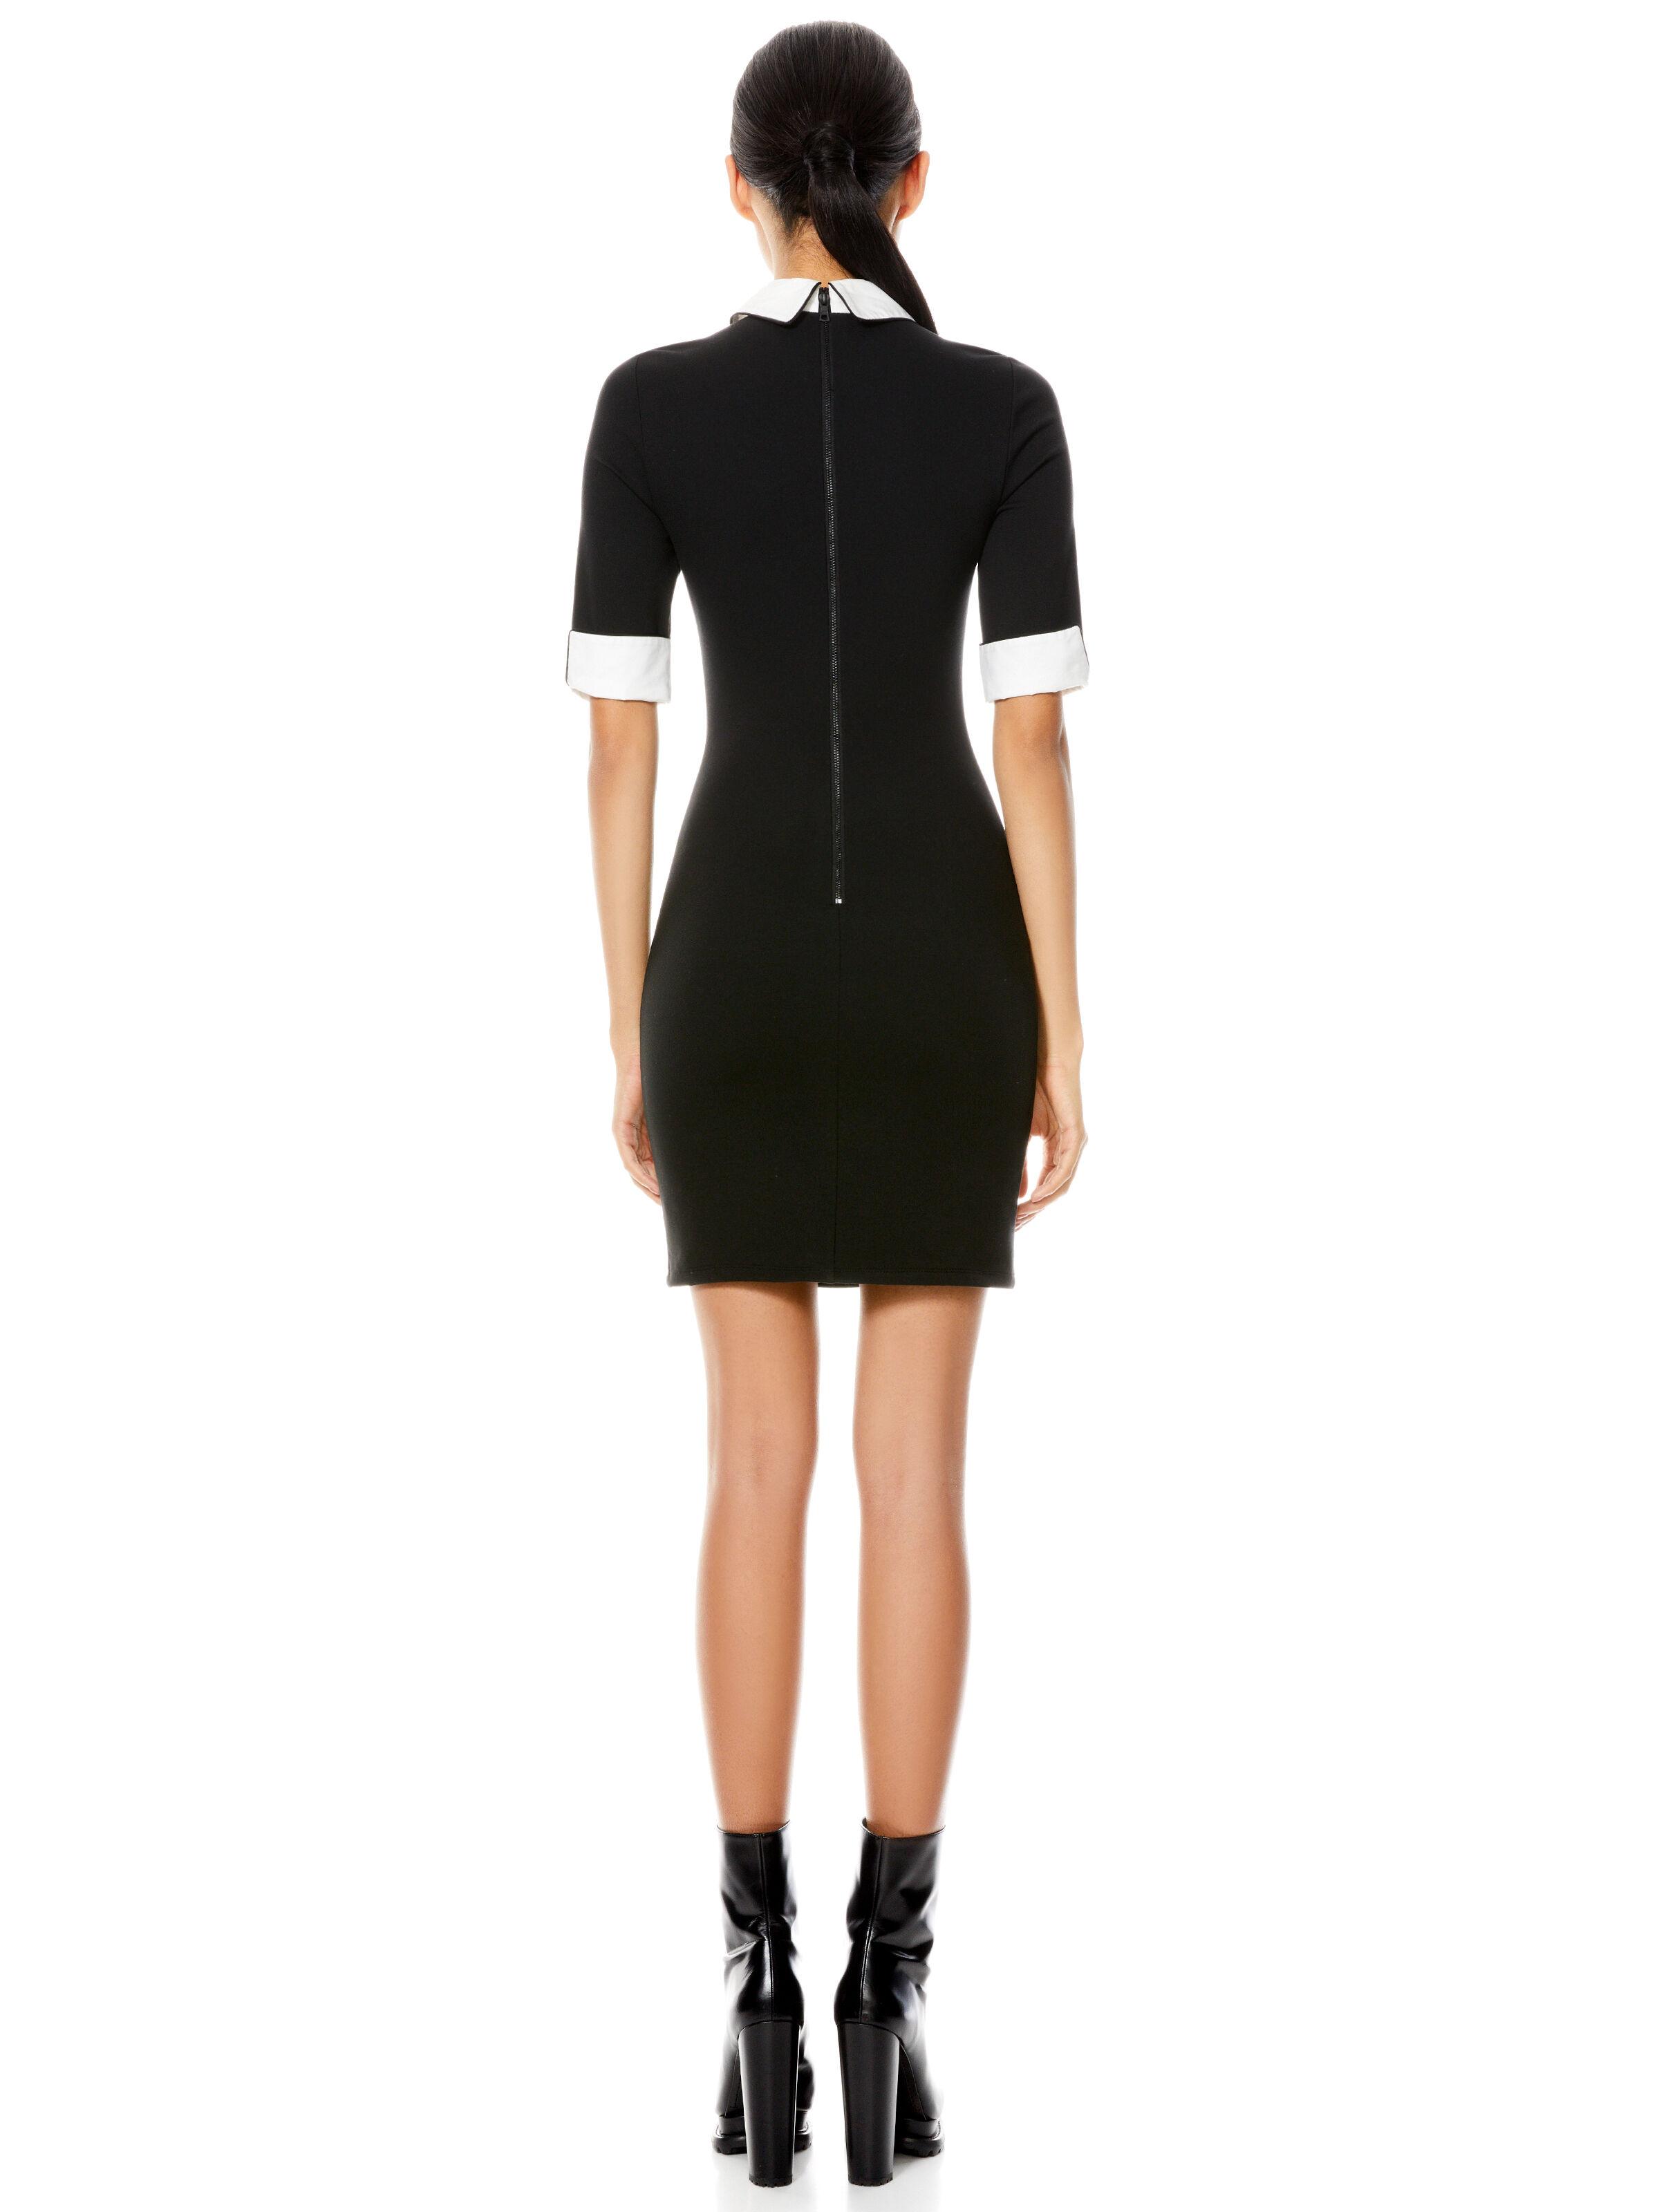 Alice + Olivia Delora Collared Mini Dress in Black - Lyst